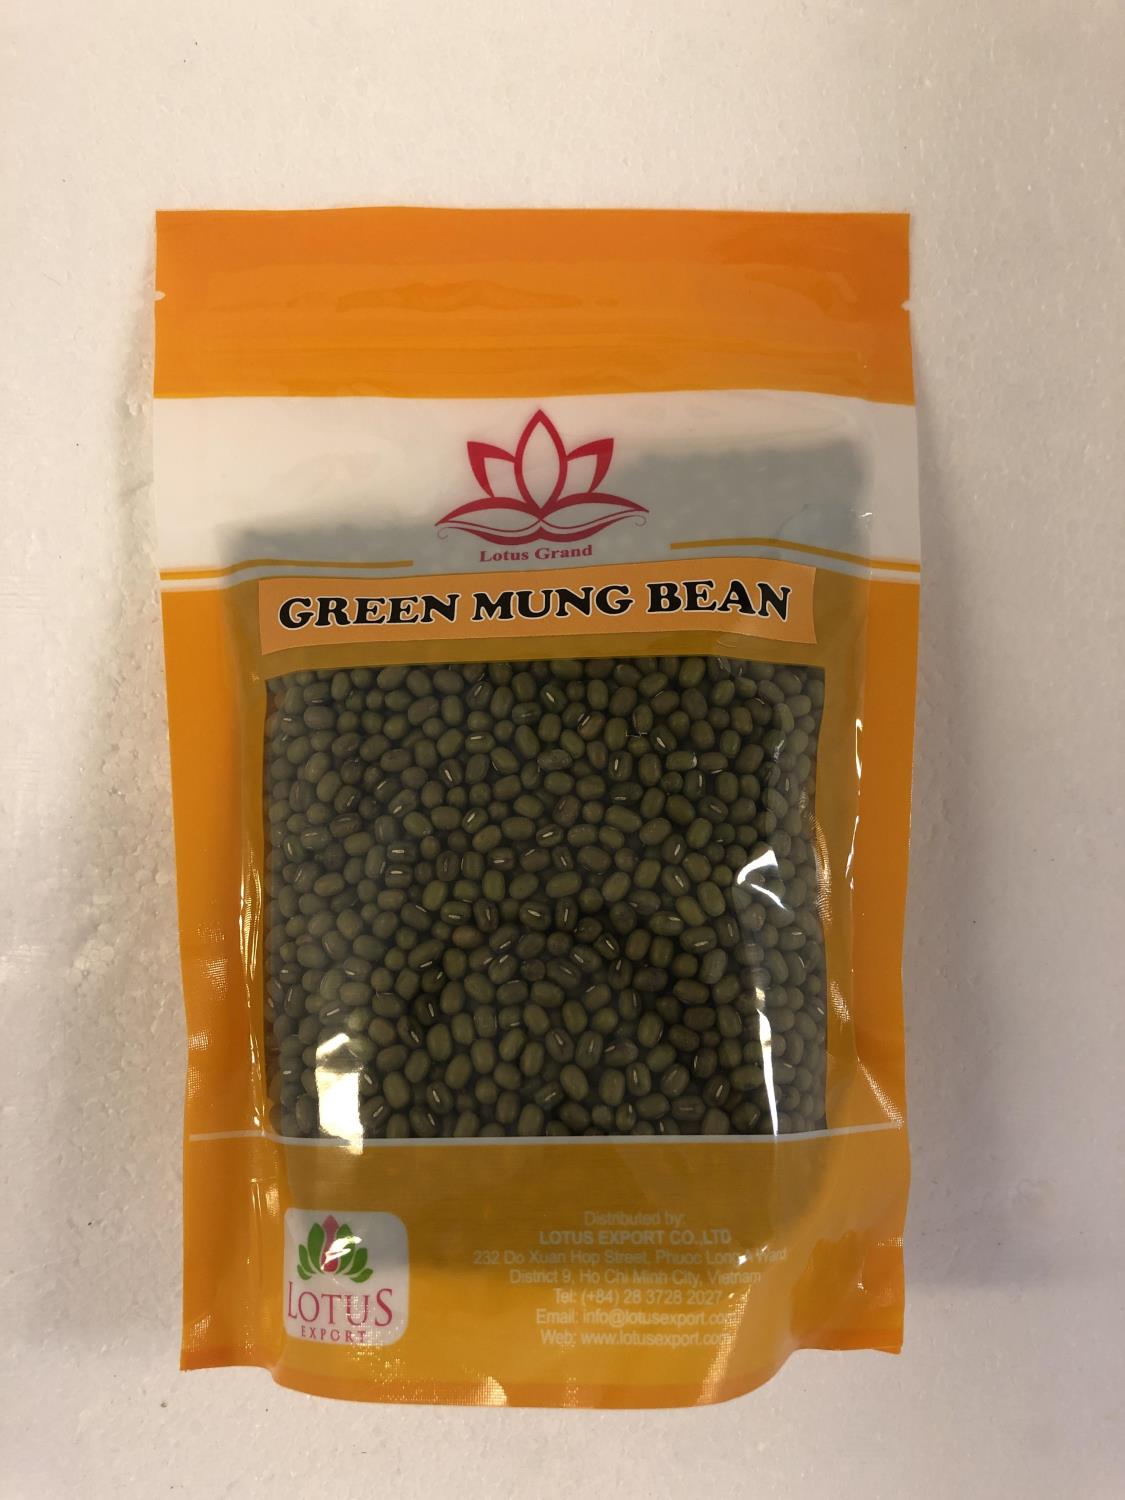 LOTUS Green Mung Bean 385g